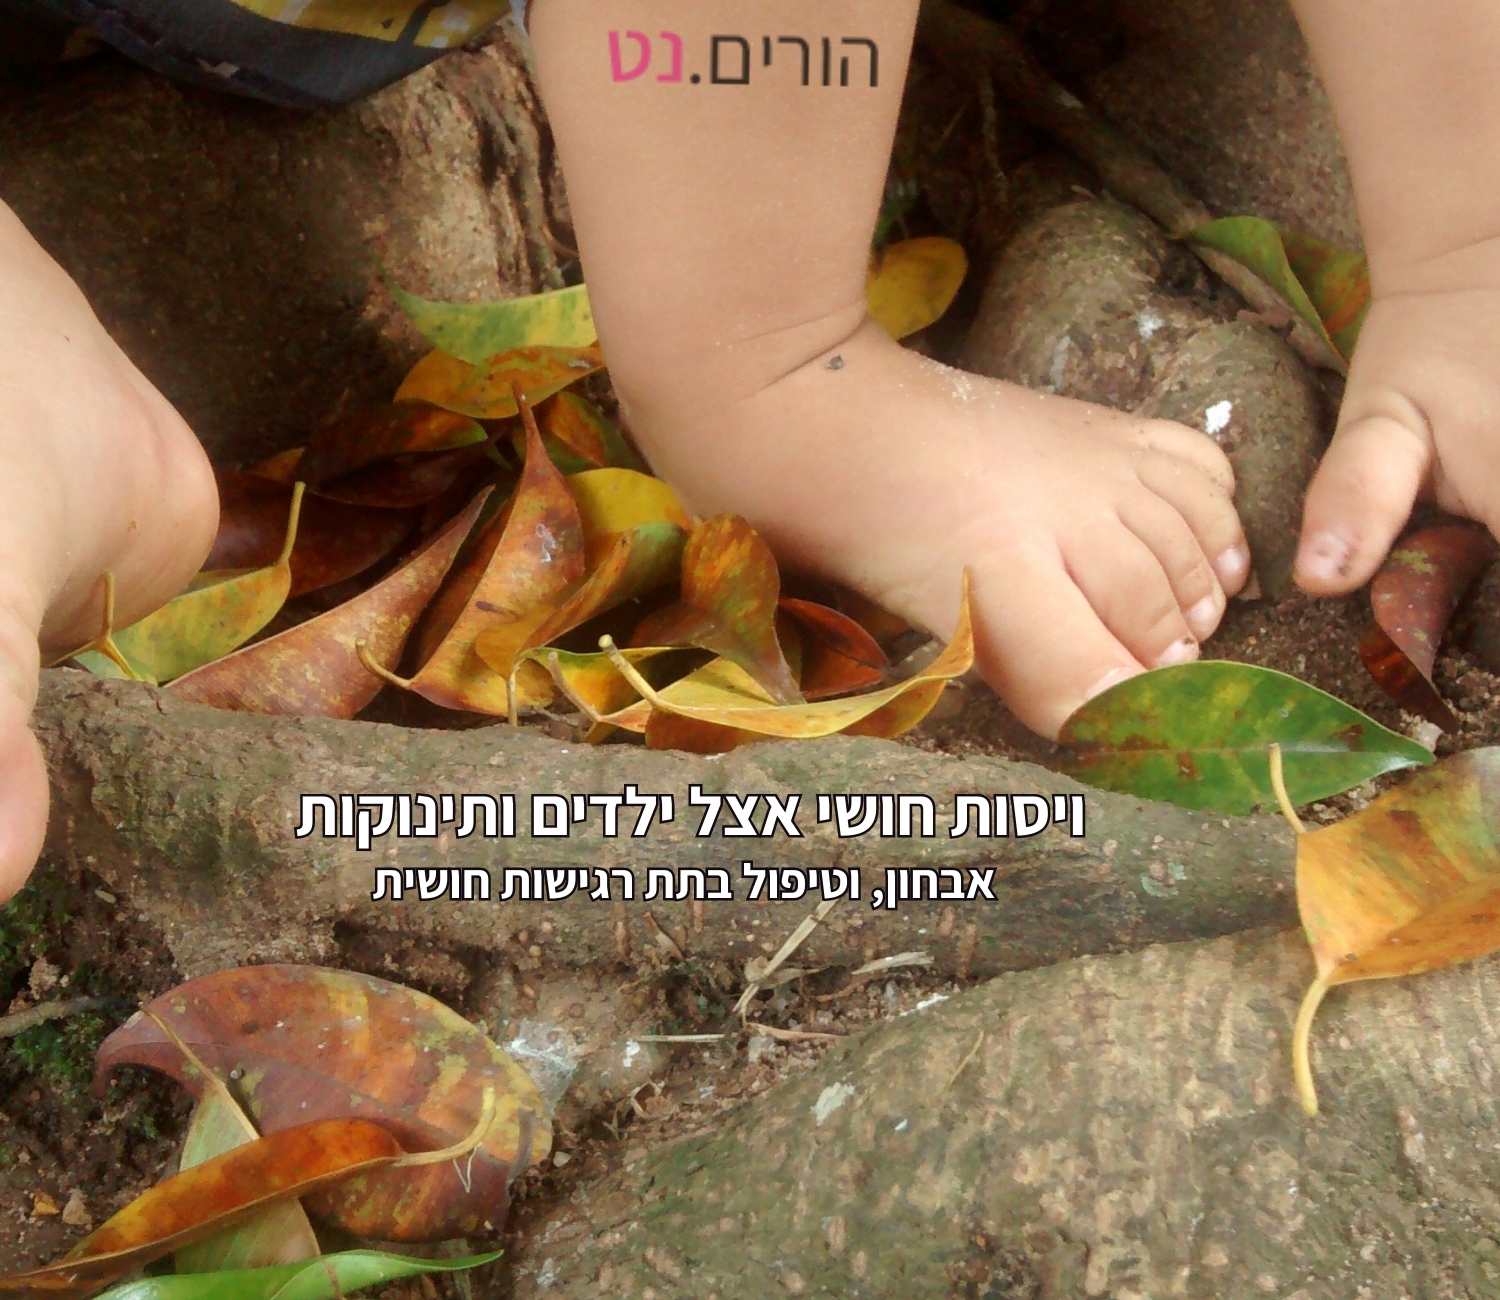 רגליים יחפות וידיים של ילד עם או בלי קשיי ויסות חושי - דורכות על עלים ושורש עץ